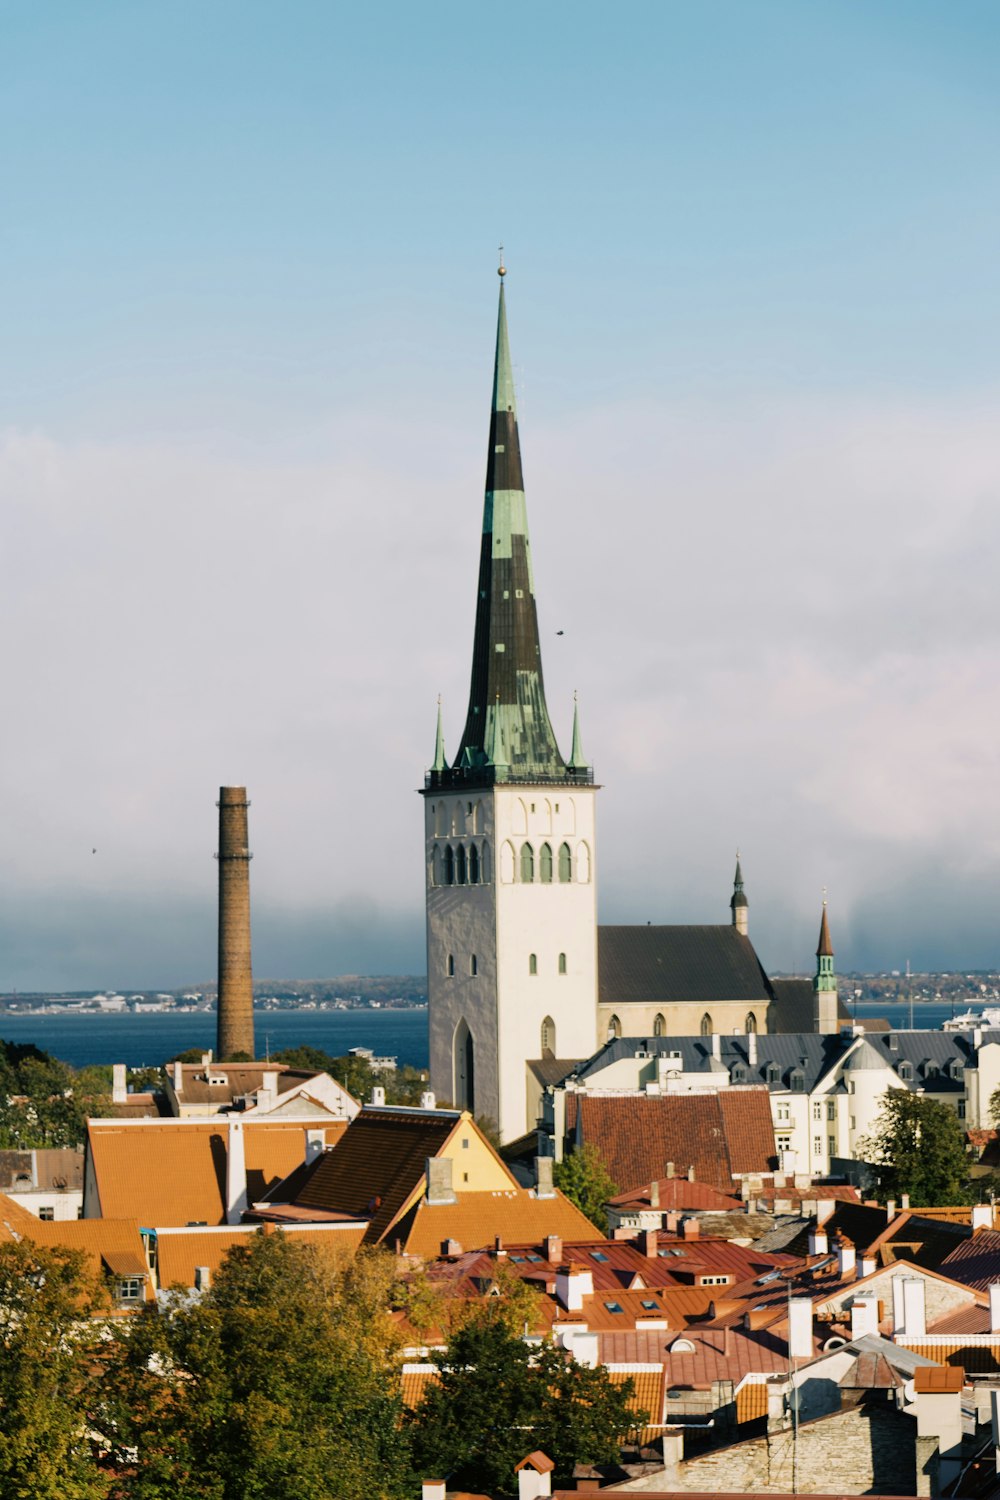 Una veduta di una città con un campanile sullo sfondo